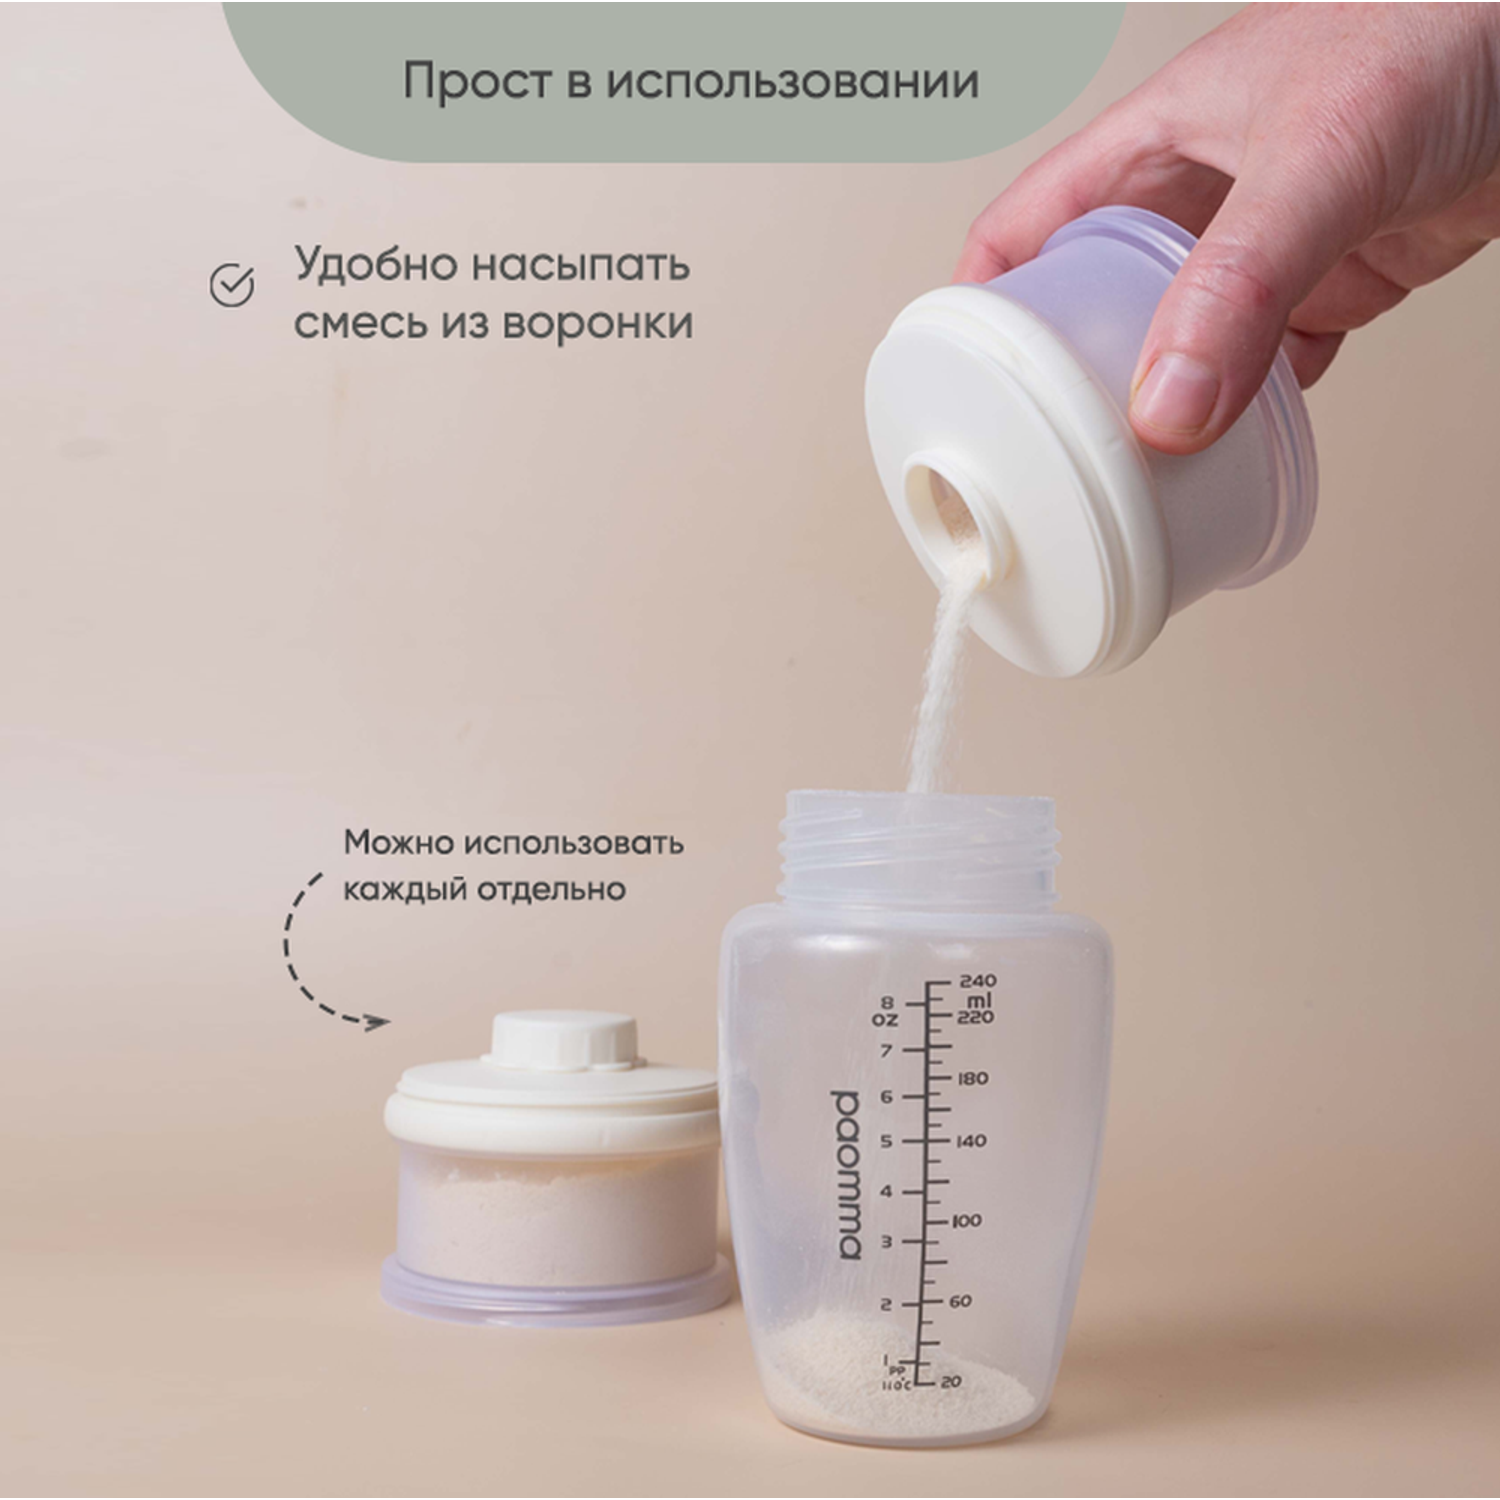 Контейнер для молочной смеси paomma и детского питания 3 отделения цвет Сливочный - фото 2